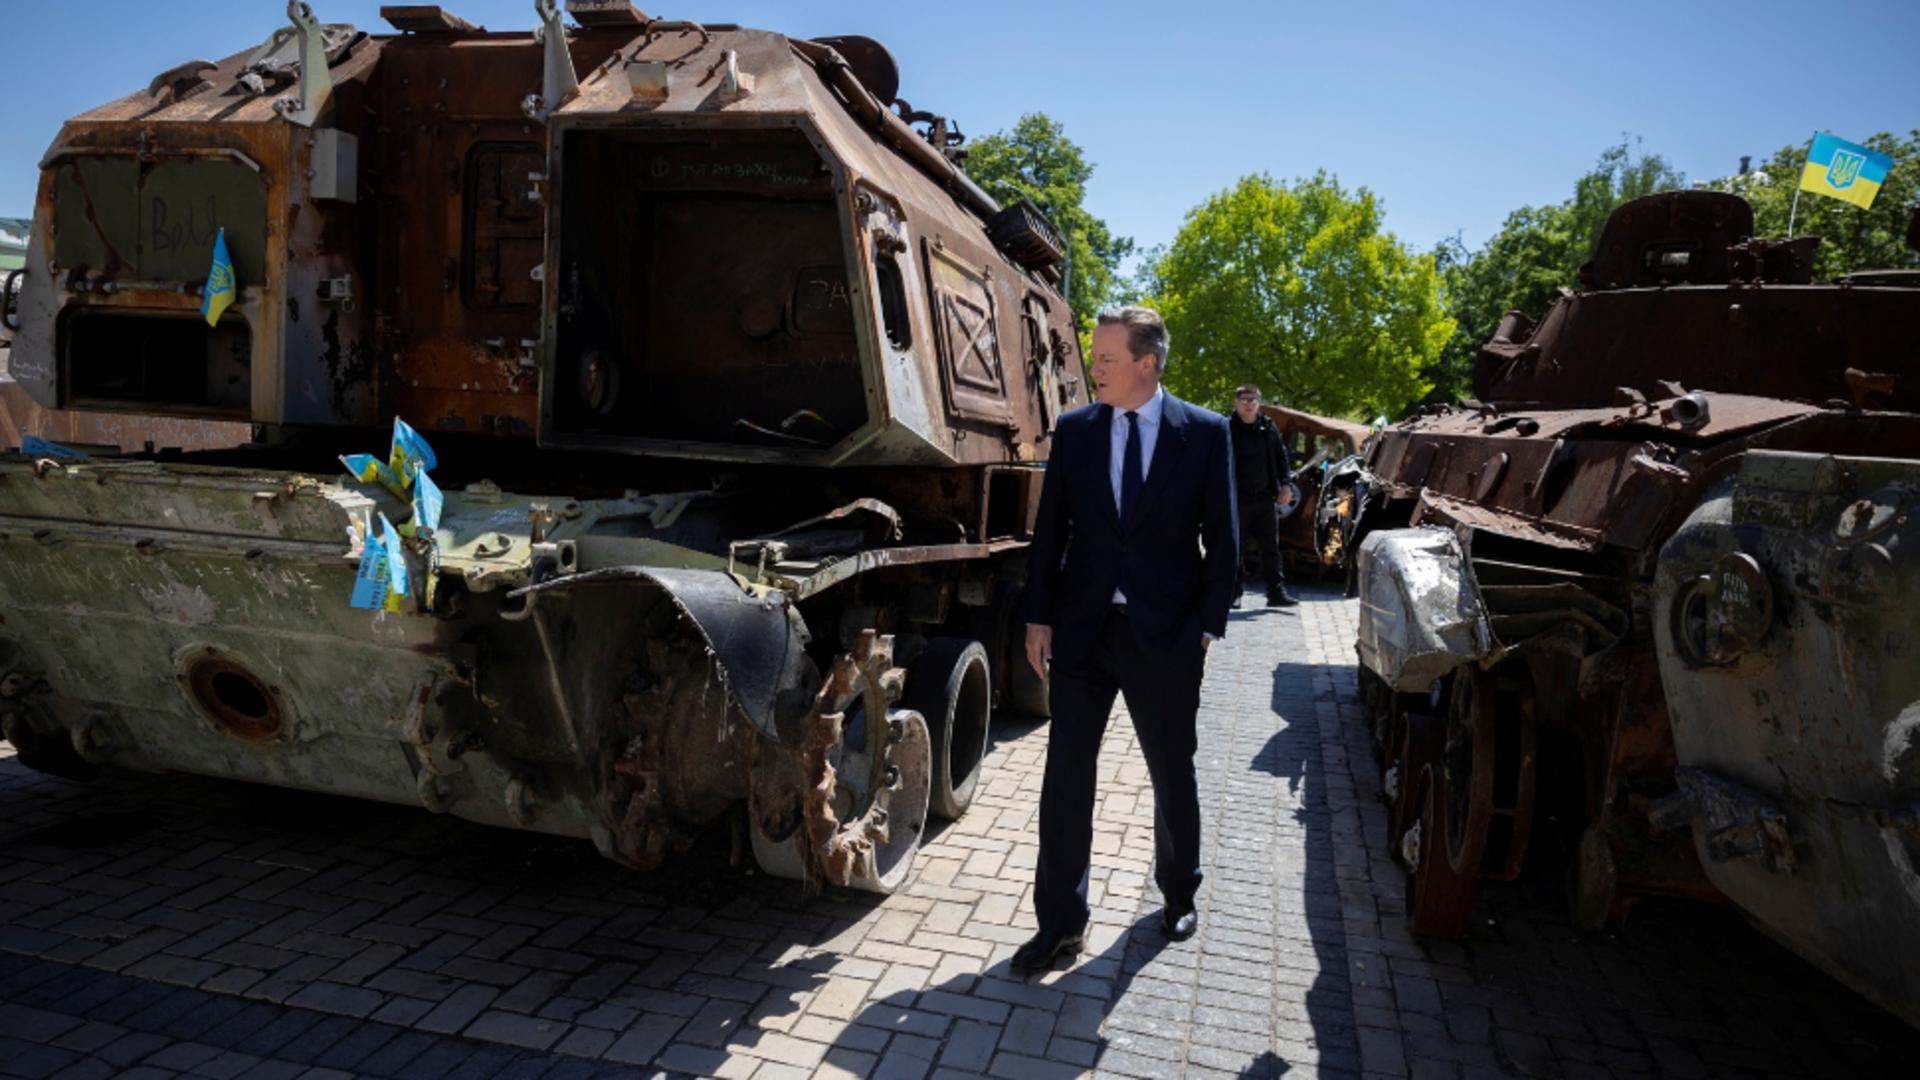 Război în Ucraina, ziua 780: Şeful diplomaţiei britanice David Cameron a vizitat joi Kievul. Promisiunile făcute armatei ucrainene – LIVE TEXT